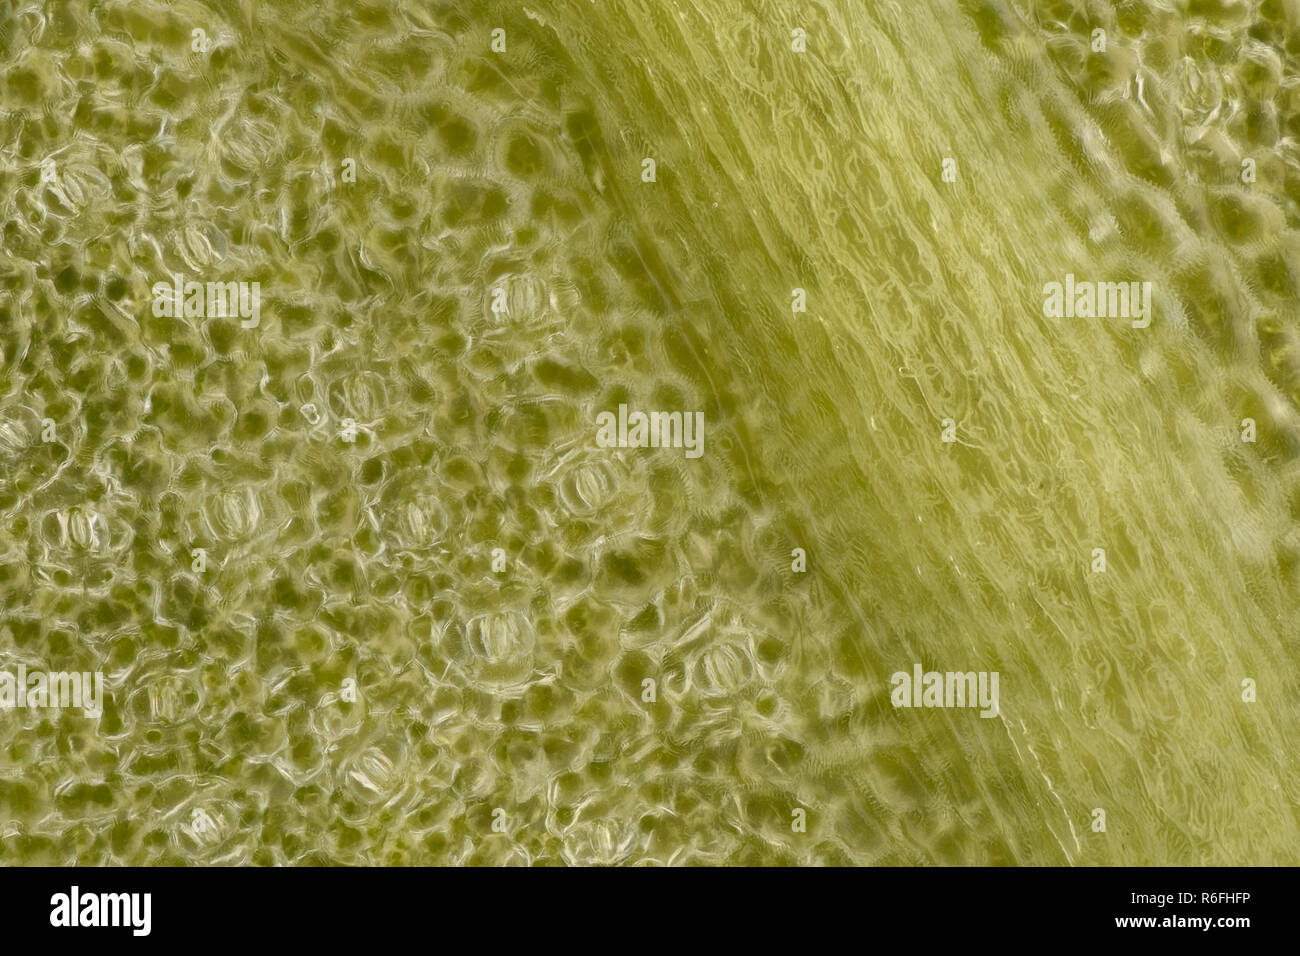 Extremer Vergrößerung - Stomatas in ein grünes Blatt Stockfoto